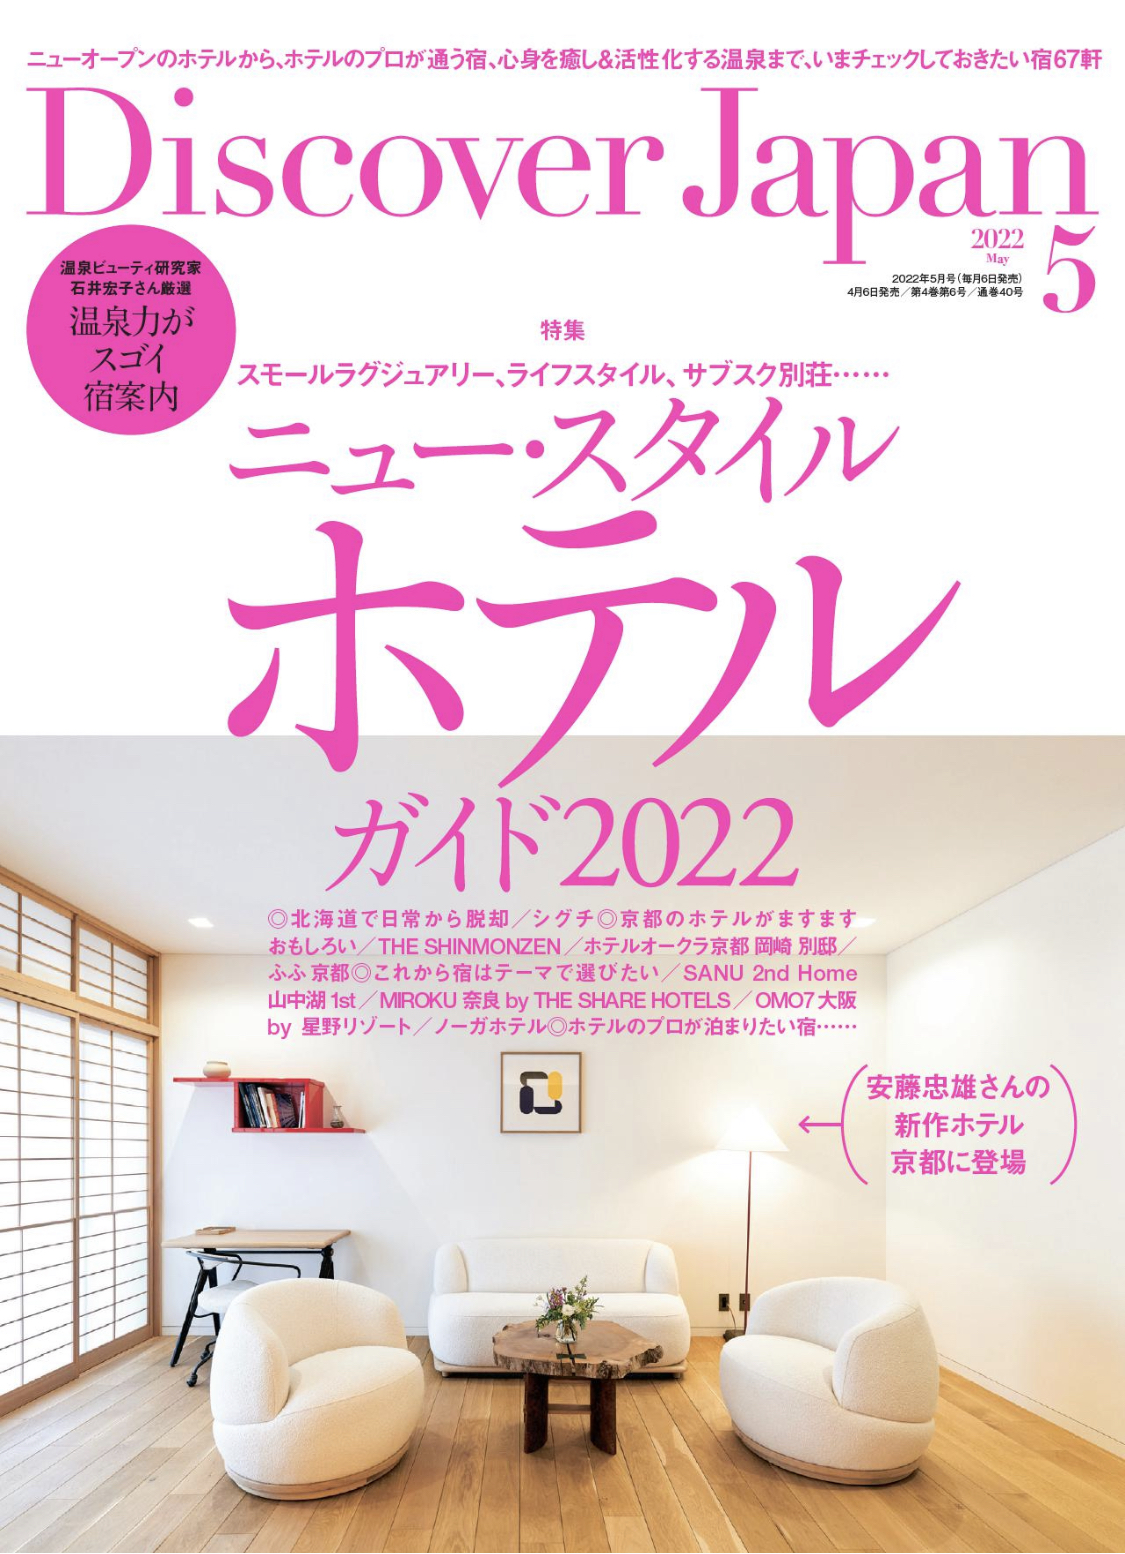 Discover Japan 5月号「ニュー・スタイル・ホテルガイド2022」（2022/04/06発売）に掲載されました。